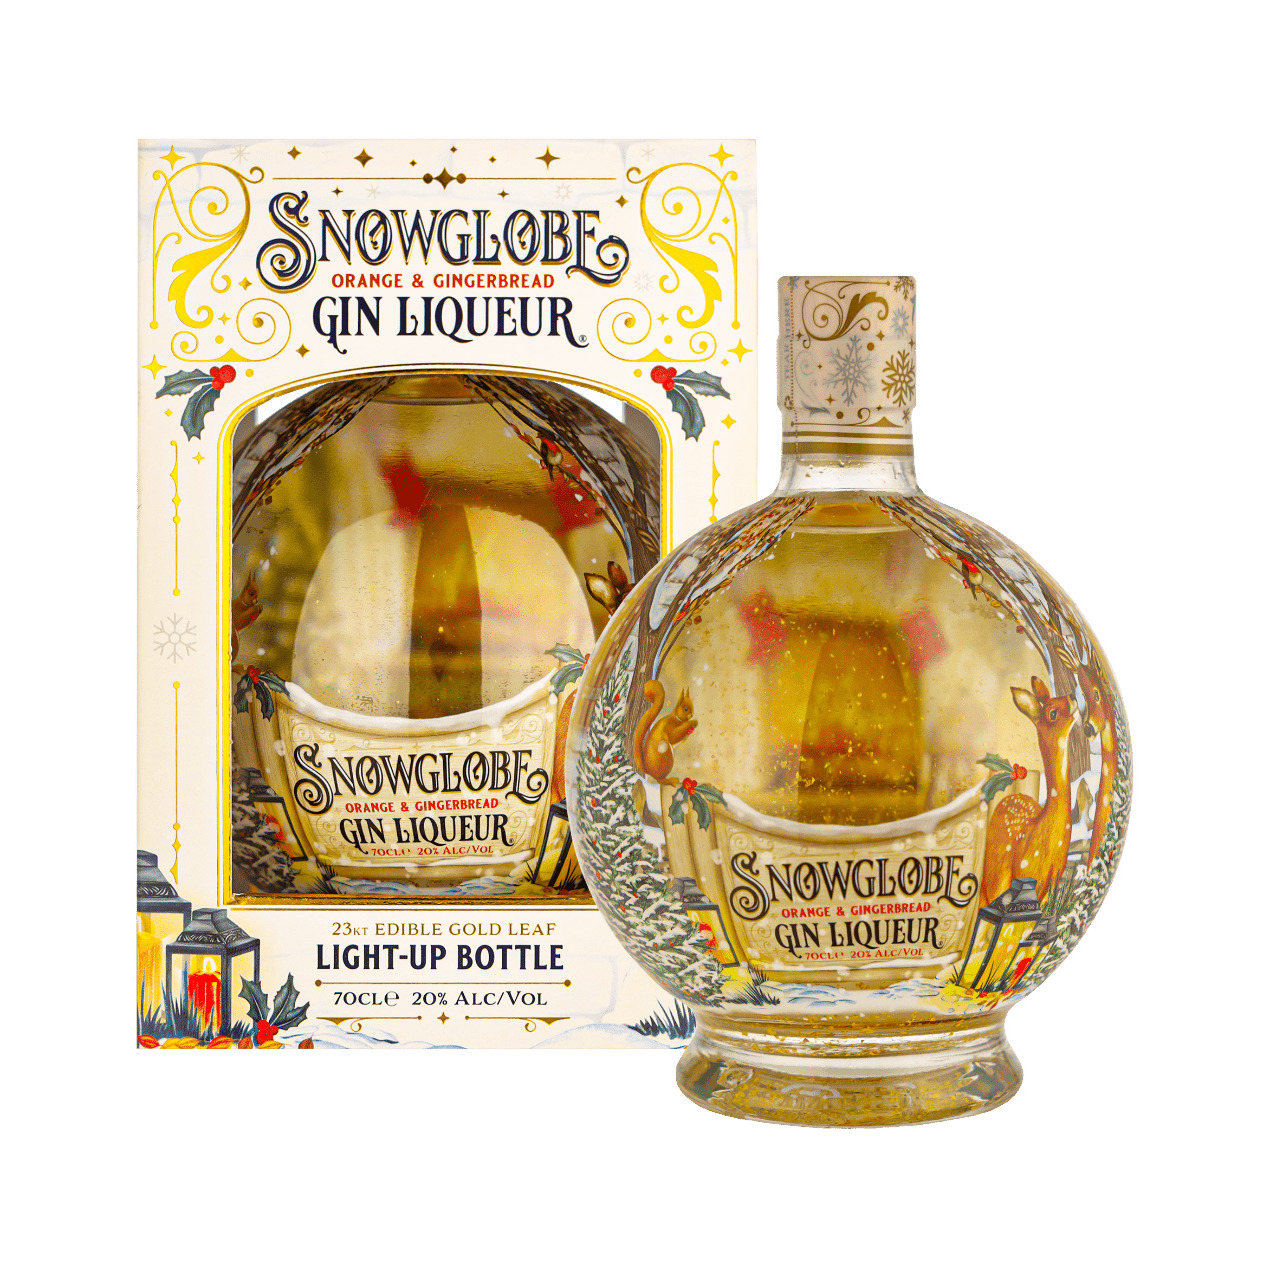 Trechter webspin Ramkoers lezing Snow Globe - Orange & Gingerbread Gin Liqueur 70cl Likeur vind je...